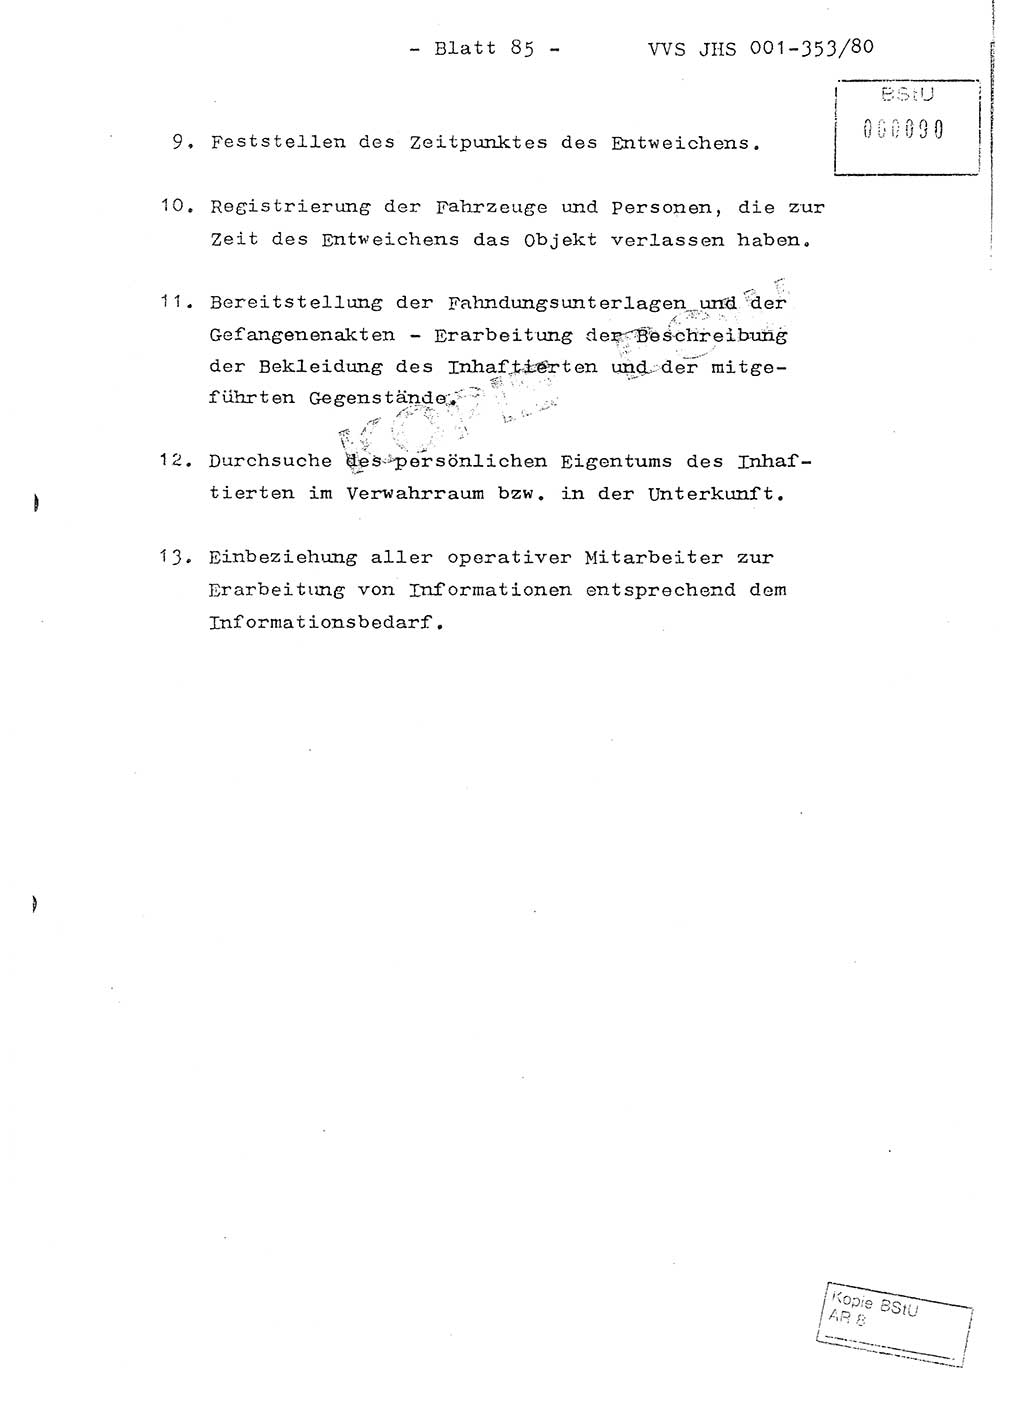 Diplomarbeit Hauptmann Joachim Klaumünzner (Abt. ⅩⅣ), Ministerium für Staatssicherheit (MfS) [Deutsche Demokratische Republik (DDR)], Juristische Hochschule (JHS), Vertrauliche Verschlußsache (VVS) o001-353/80, Potsdam 1980, Blatt 85 (Dipl.-Arb. MfS DDR JHS VVS o001-353/80 1980, Bl. 85)